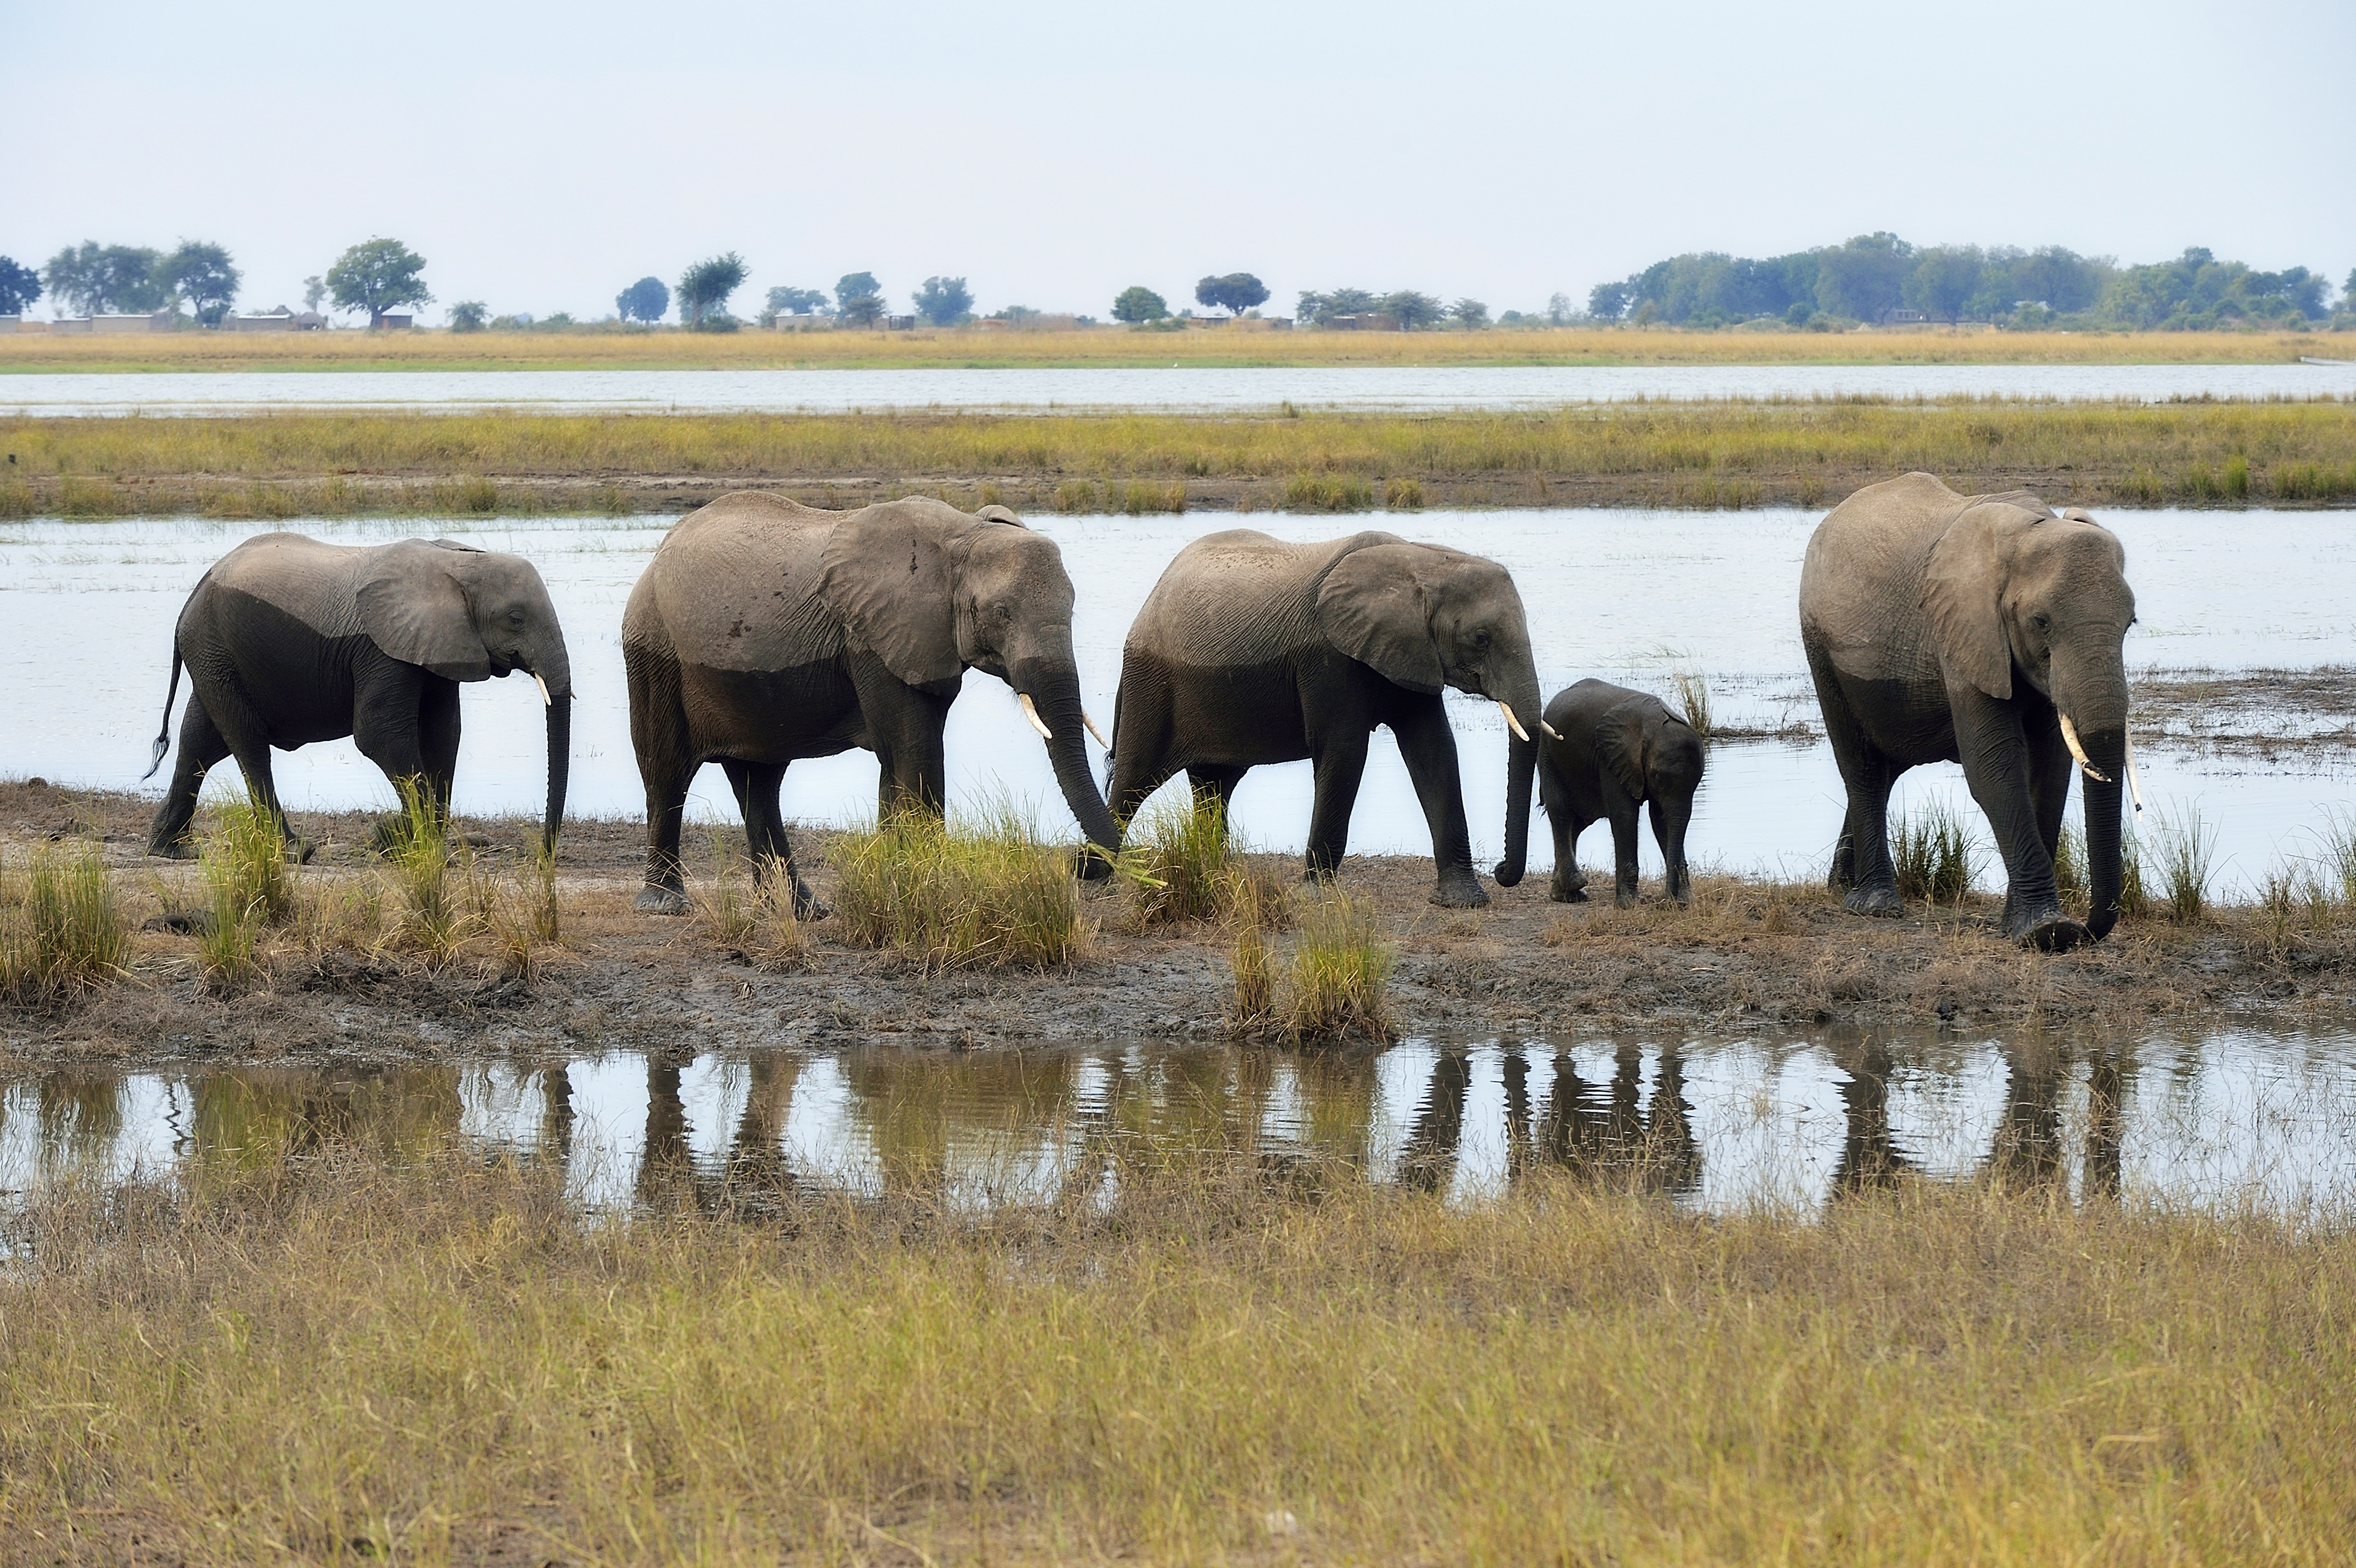 Several elephants walking along a river